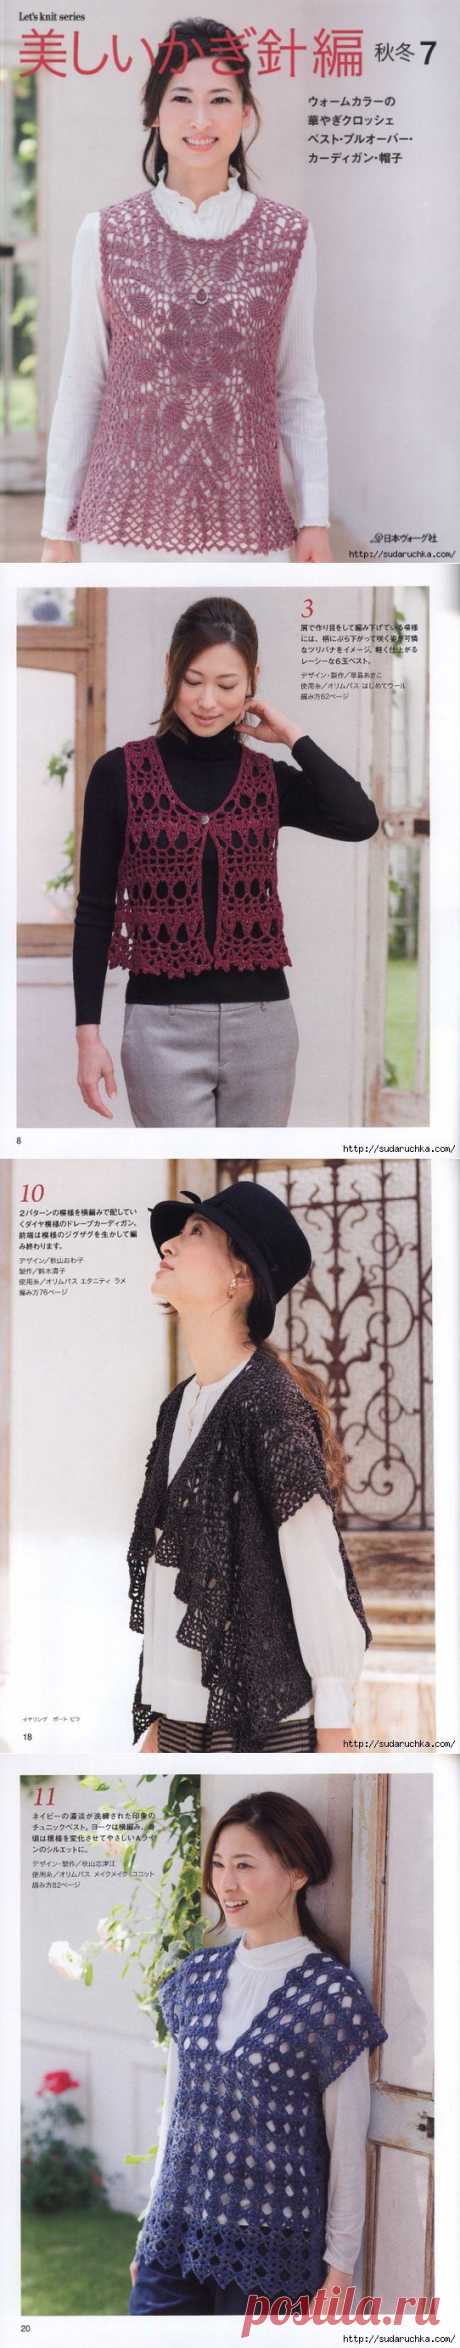 Японский журнал по вязанию для женщин - LKS_80423.